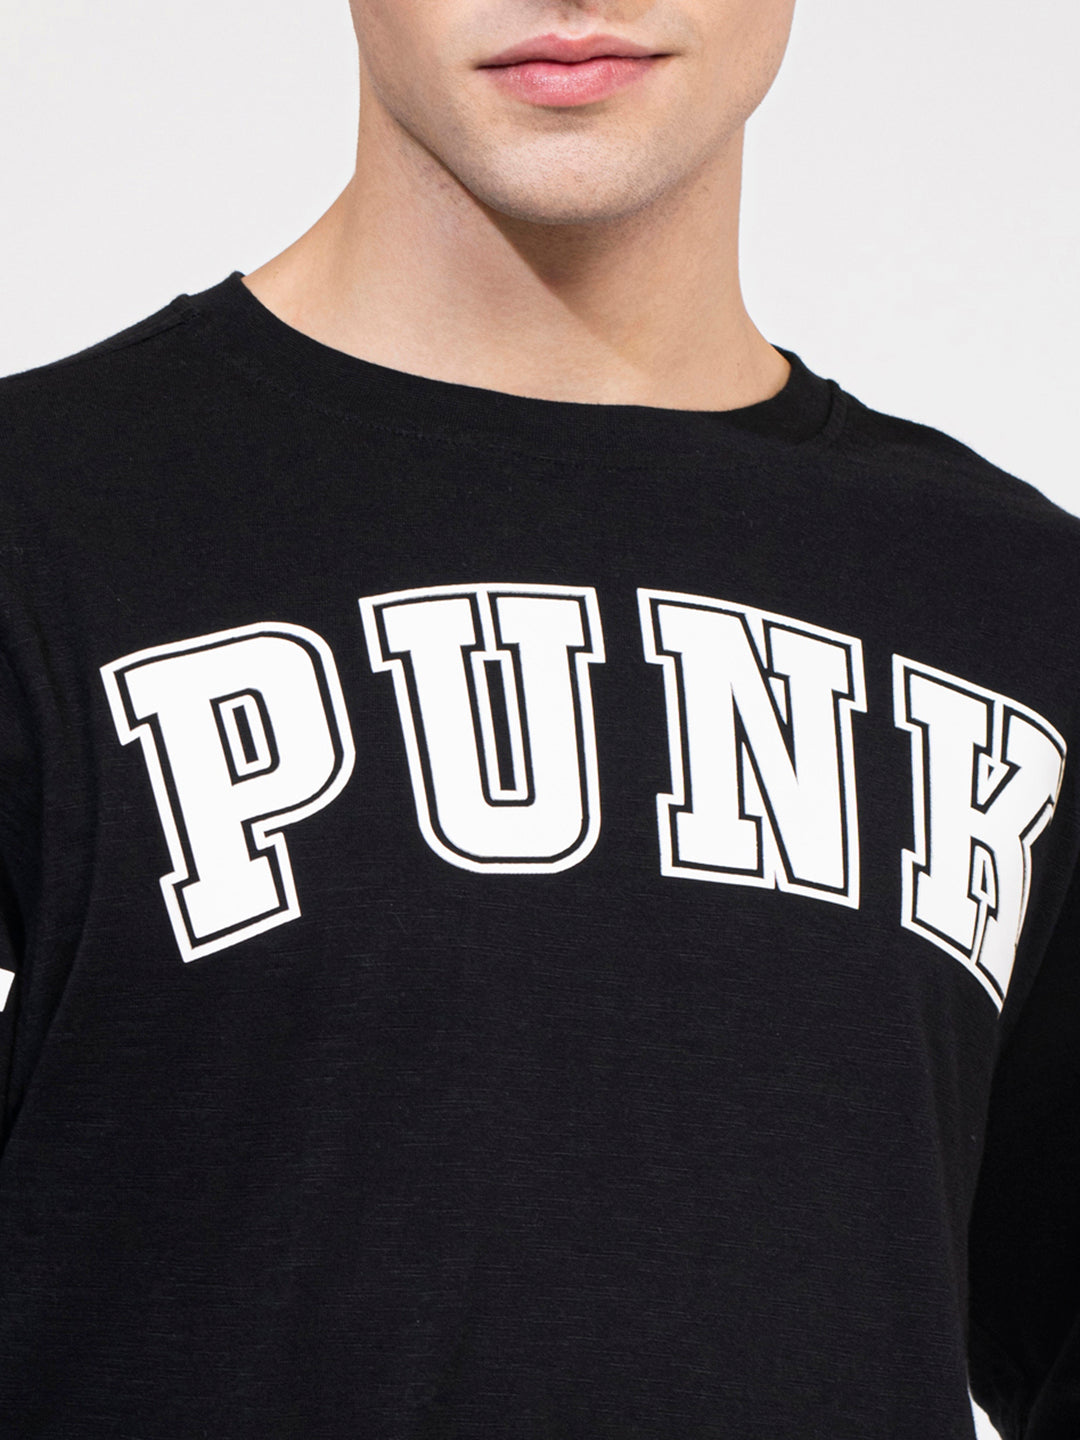 PUNK-CREW Oversized Long Sleeve Tshirt